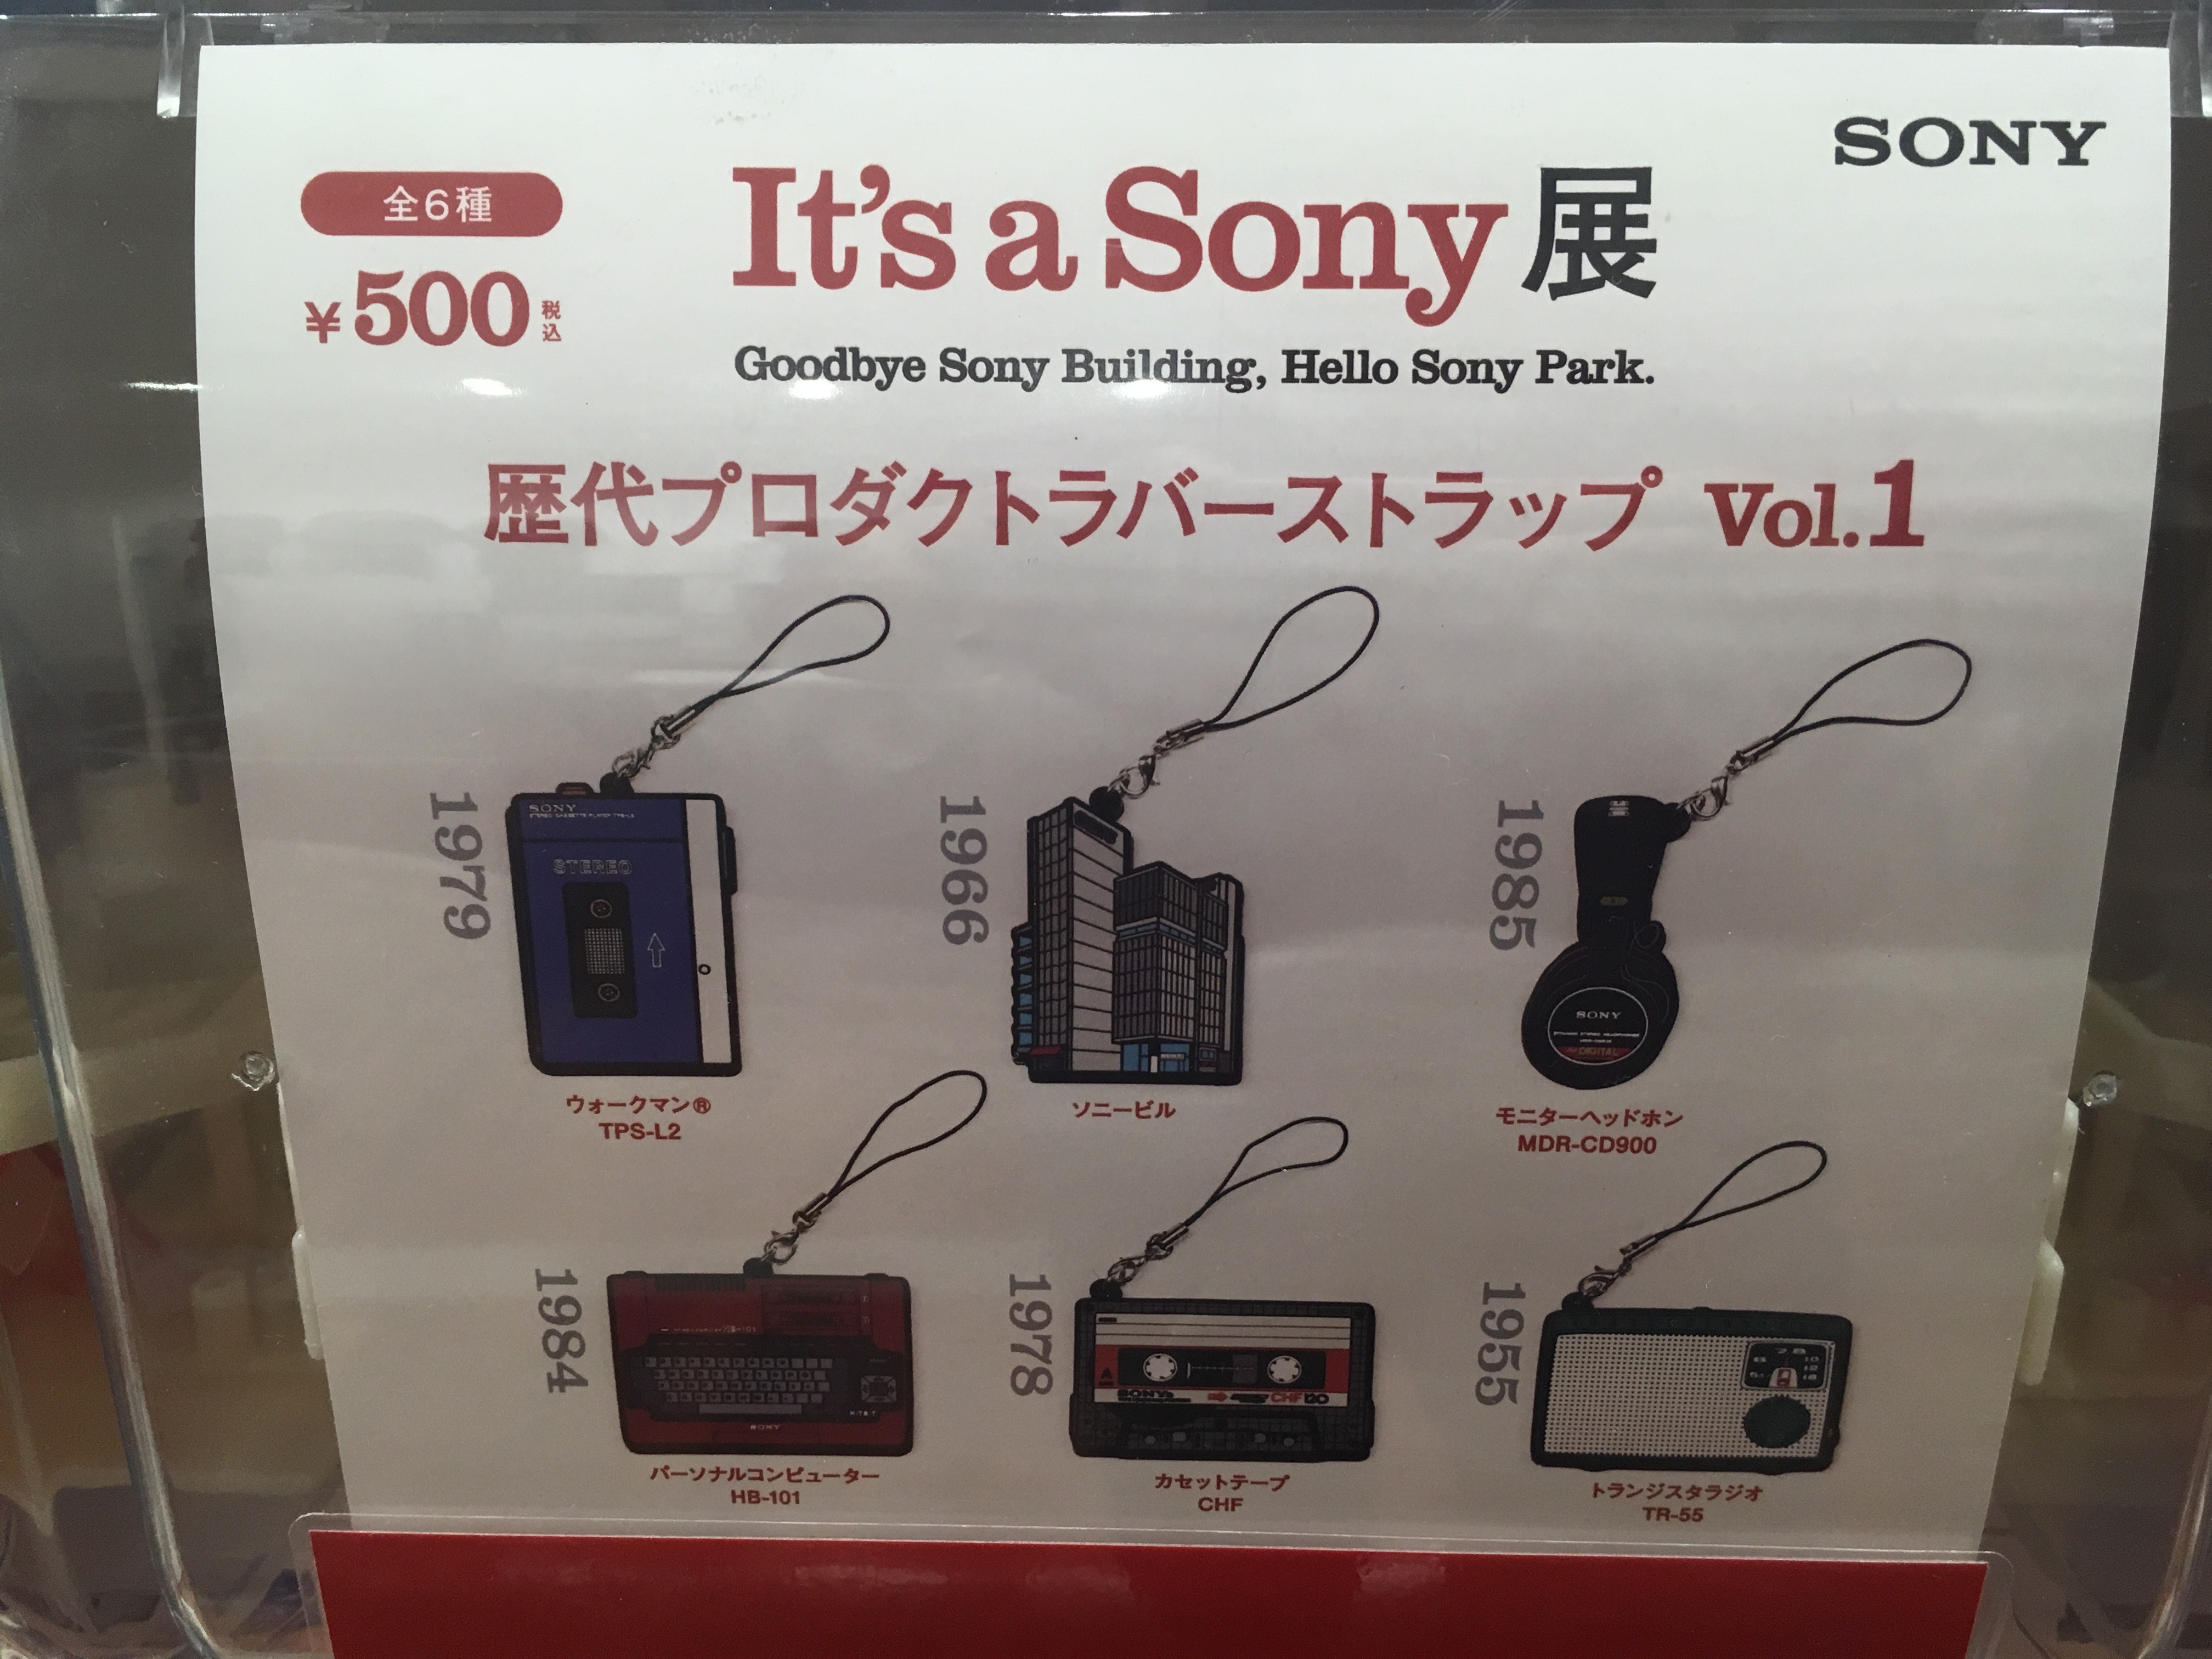 Sony Gotcha